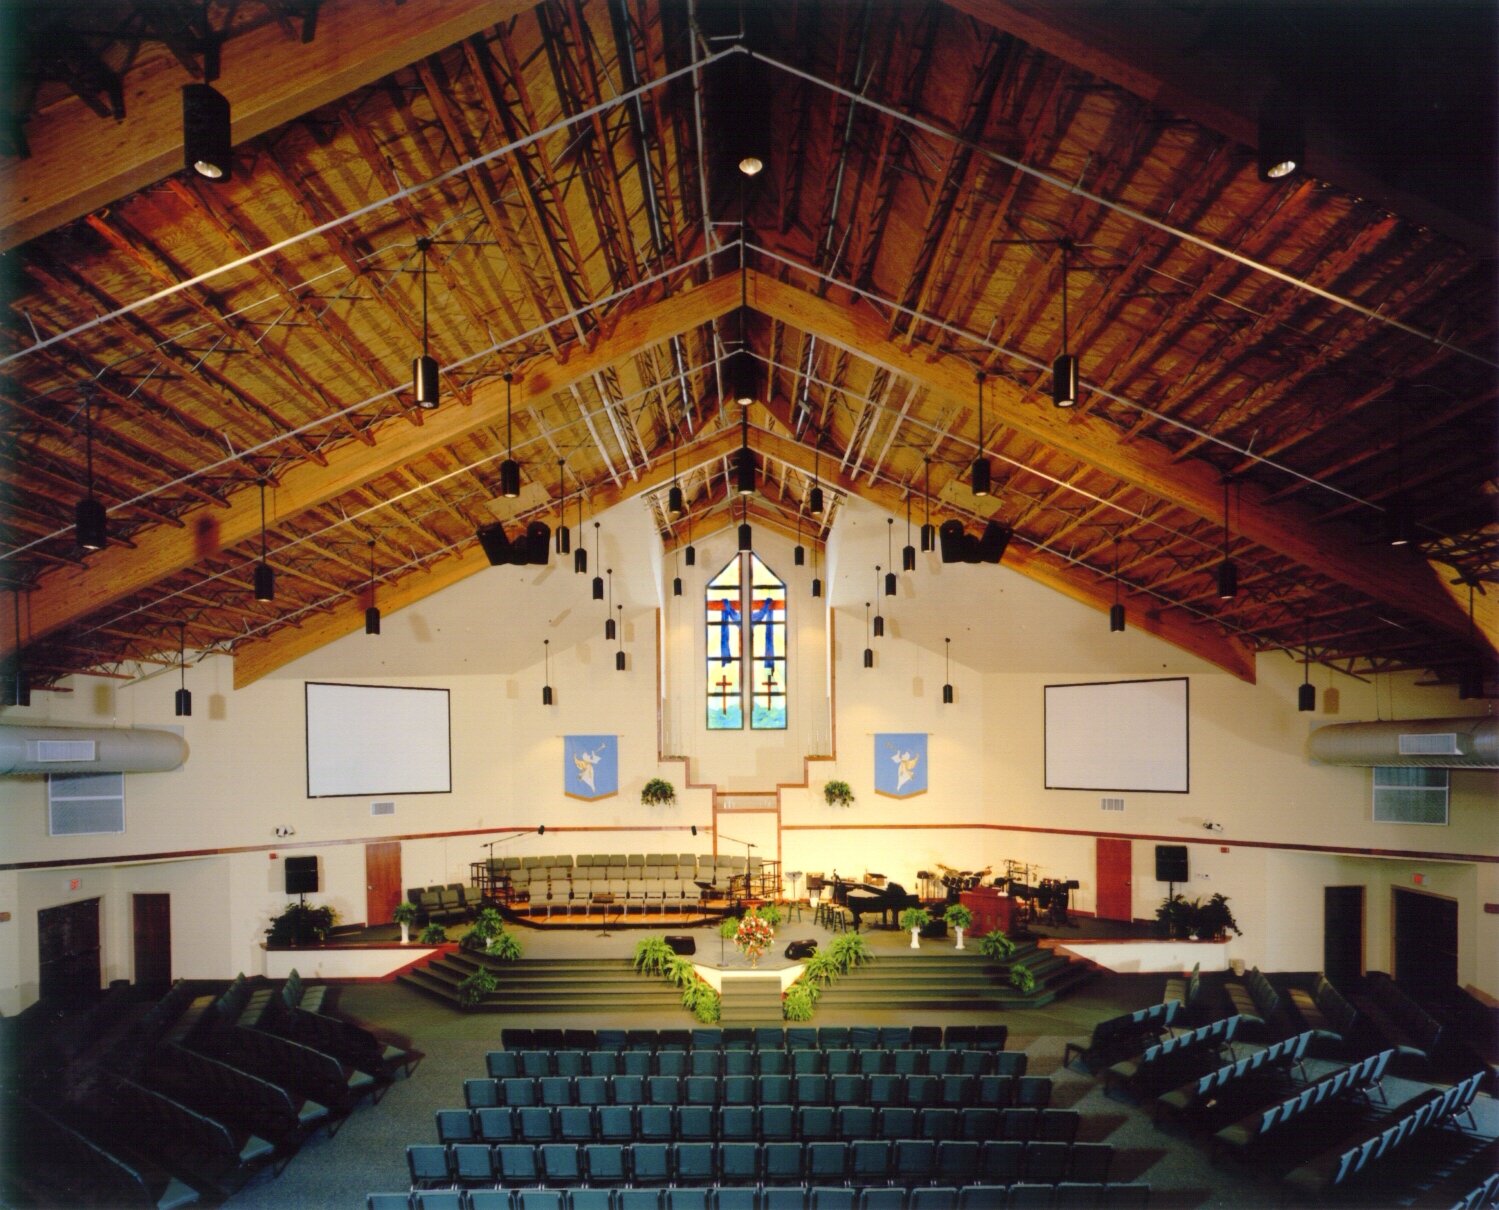 Brainerd Crossroads (BX) — Brainerd Baptist Church